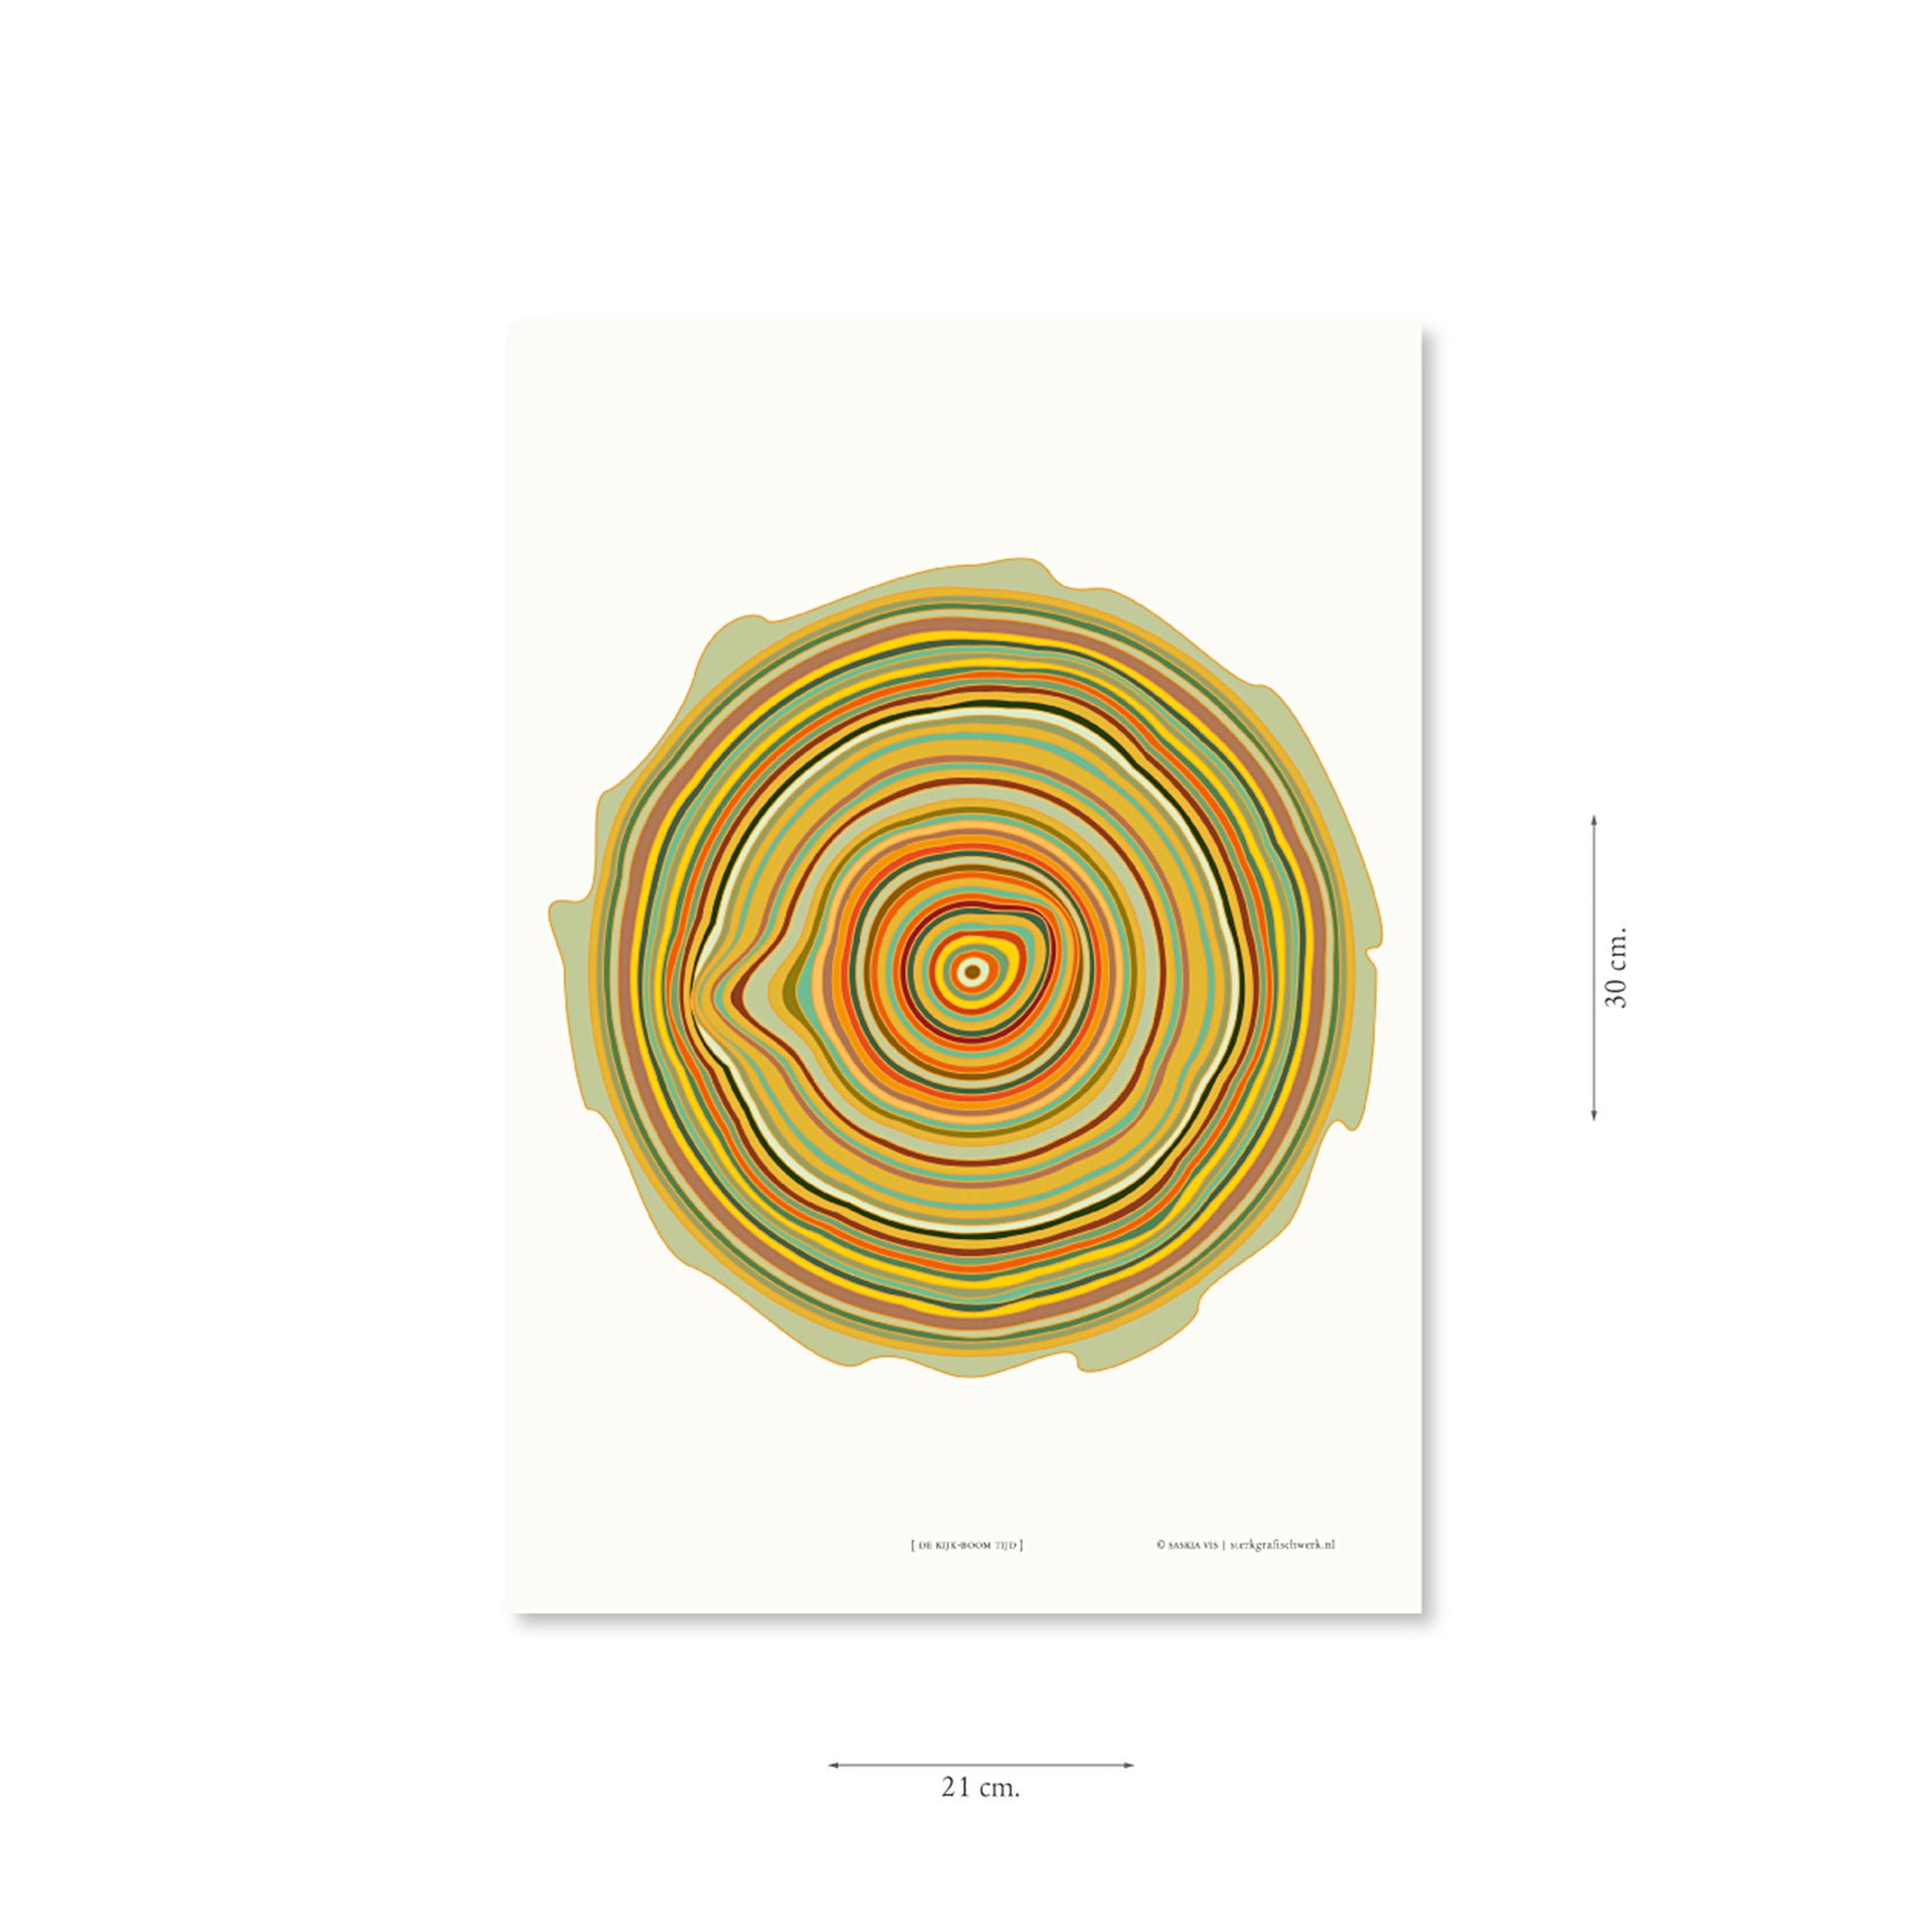 Productafbeelding, poster "de kijk-boom tijd", met aanduiding van het formaat erop weergegeven 21 x 30 cm